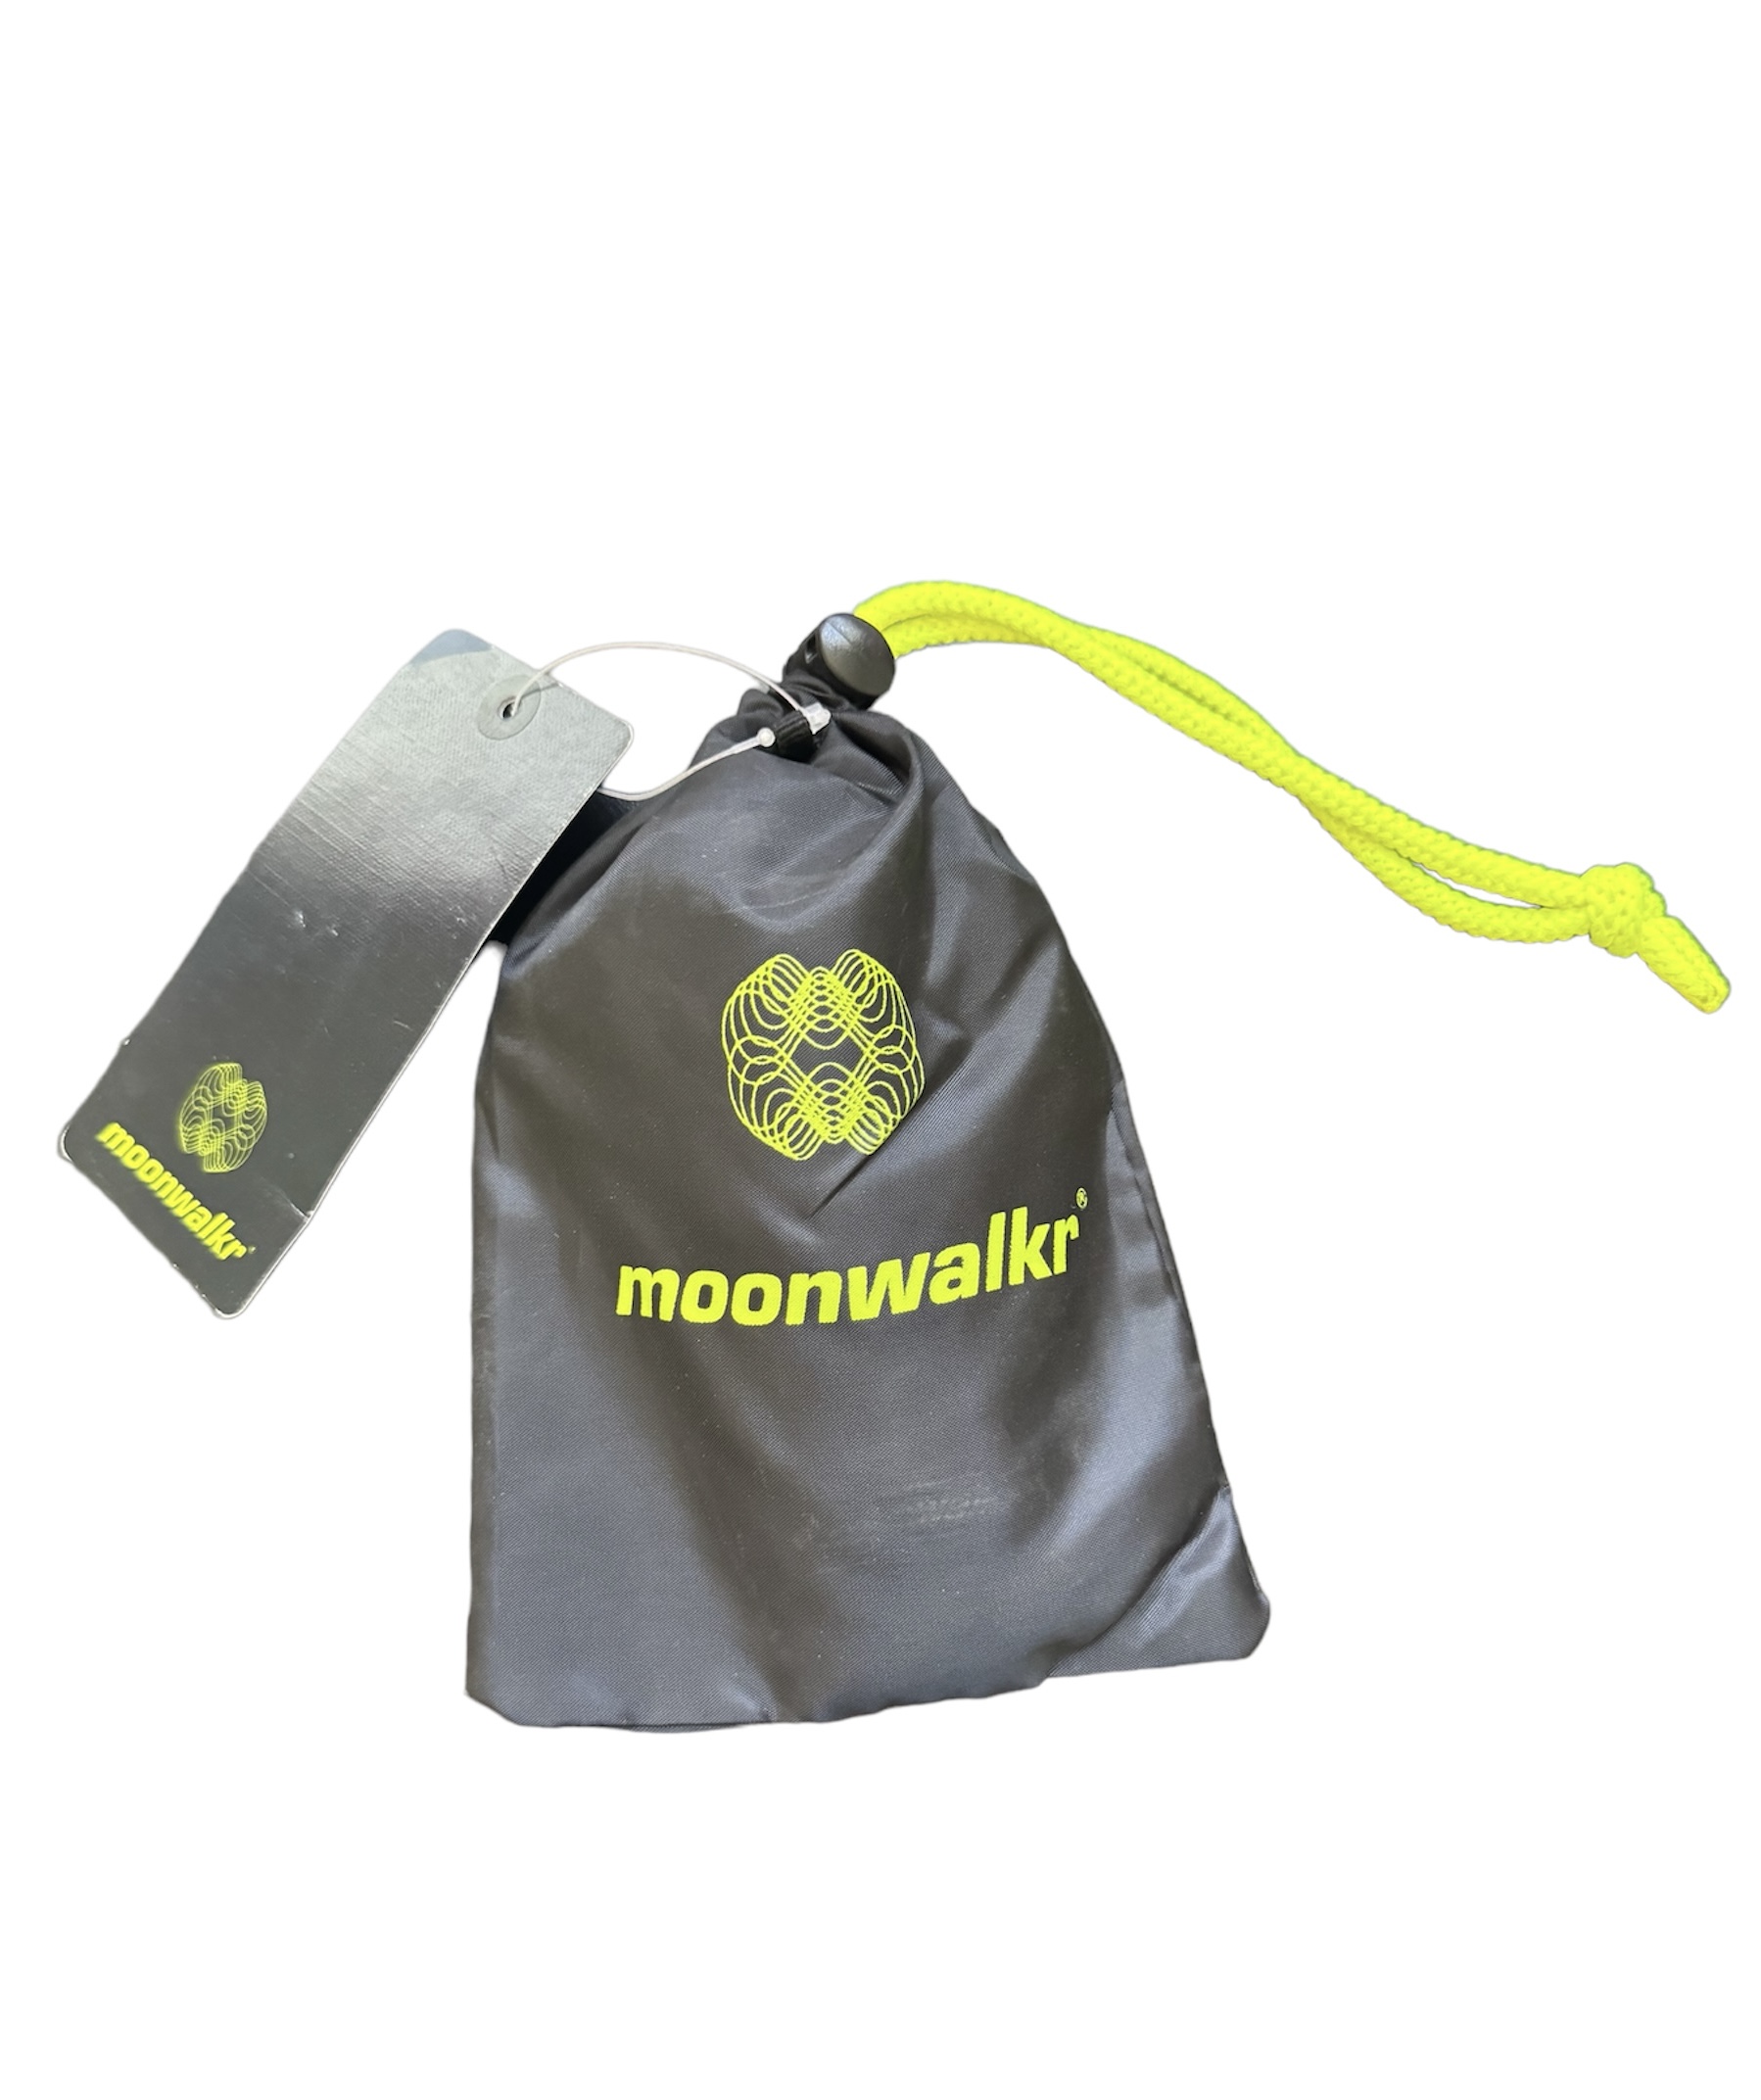 moonwalkr arm guard packaging